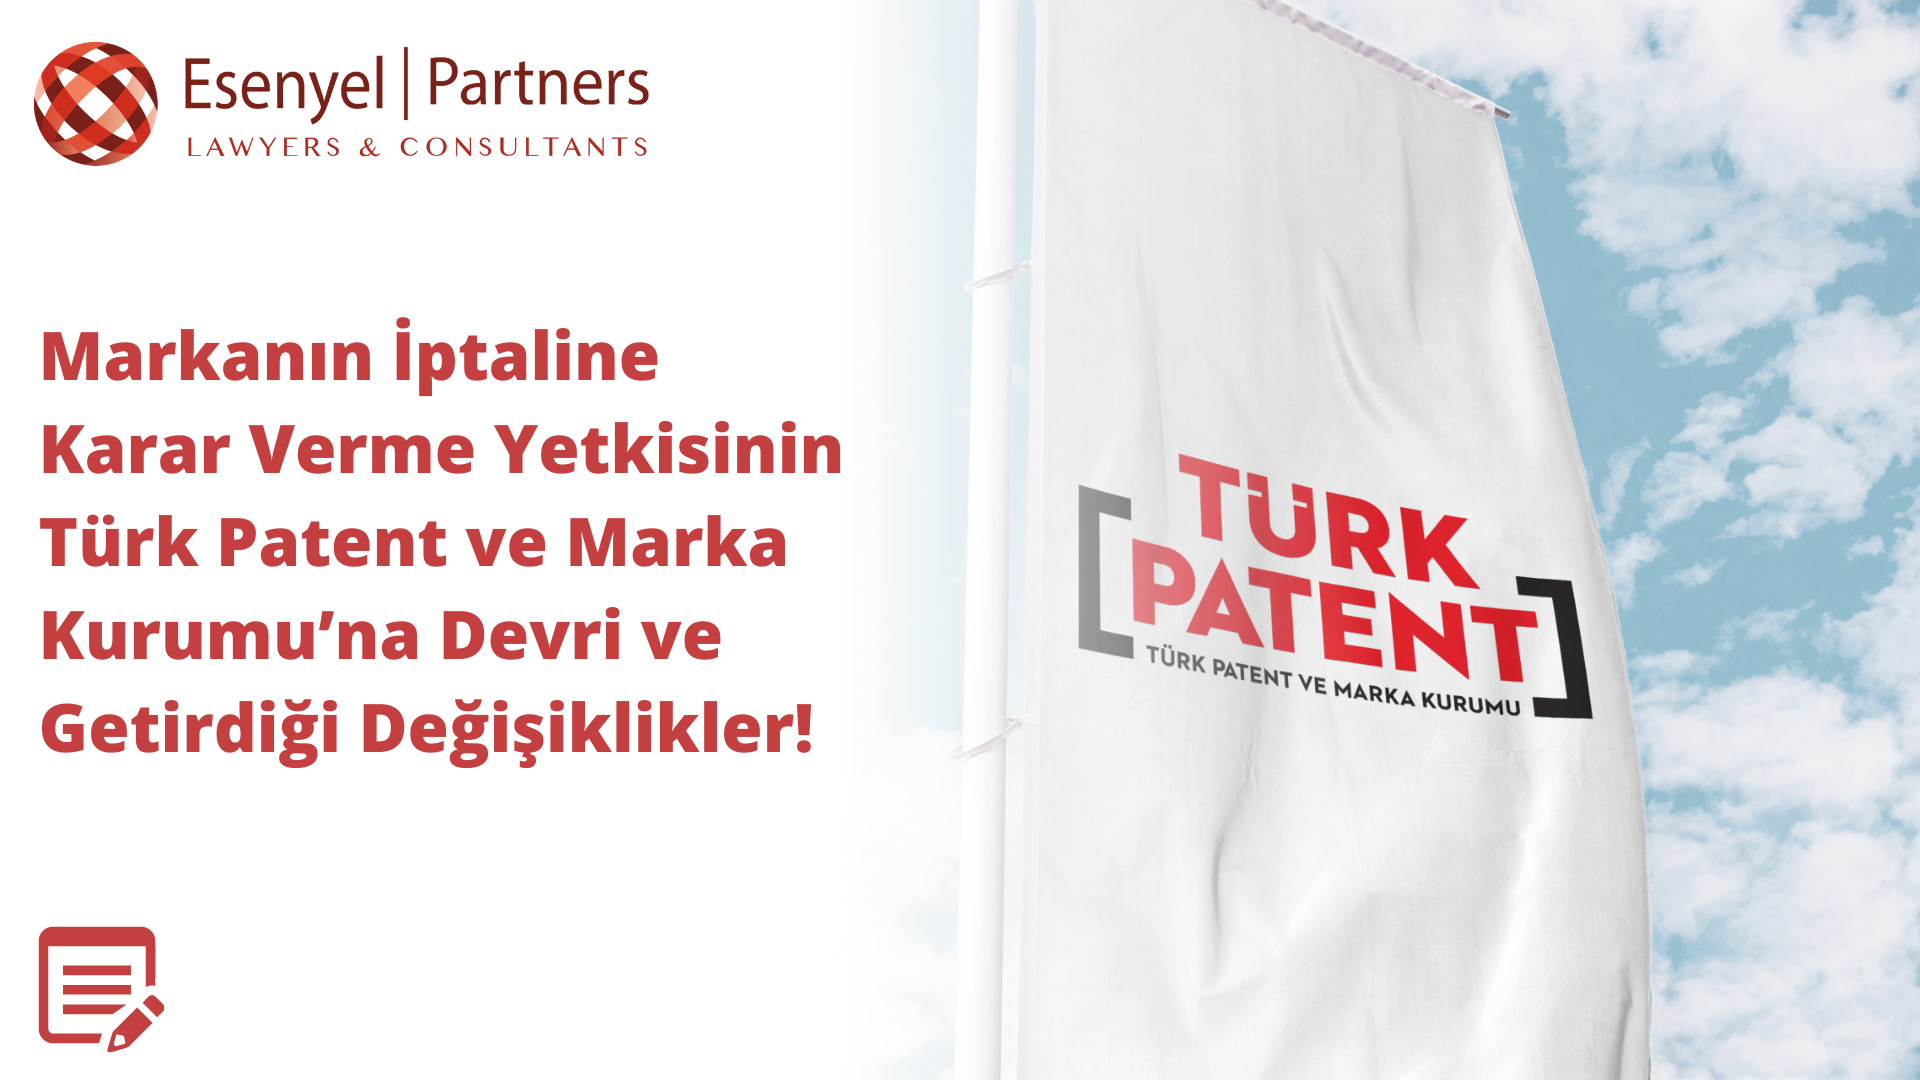 Markanın İptali̇ne Karar Verme Yetki̇si̇ni̇n Türk Patent ve Marka Kurumu’na Devri̇ ve Geti̇rdi̇ği̇ Deği̇şi̇kli̇kler!